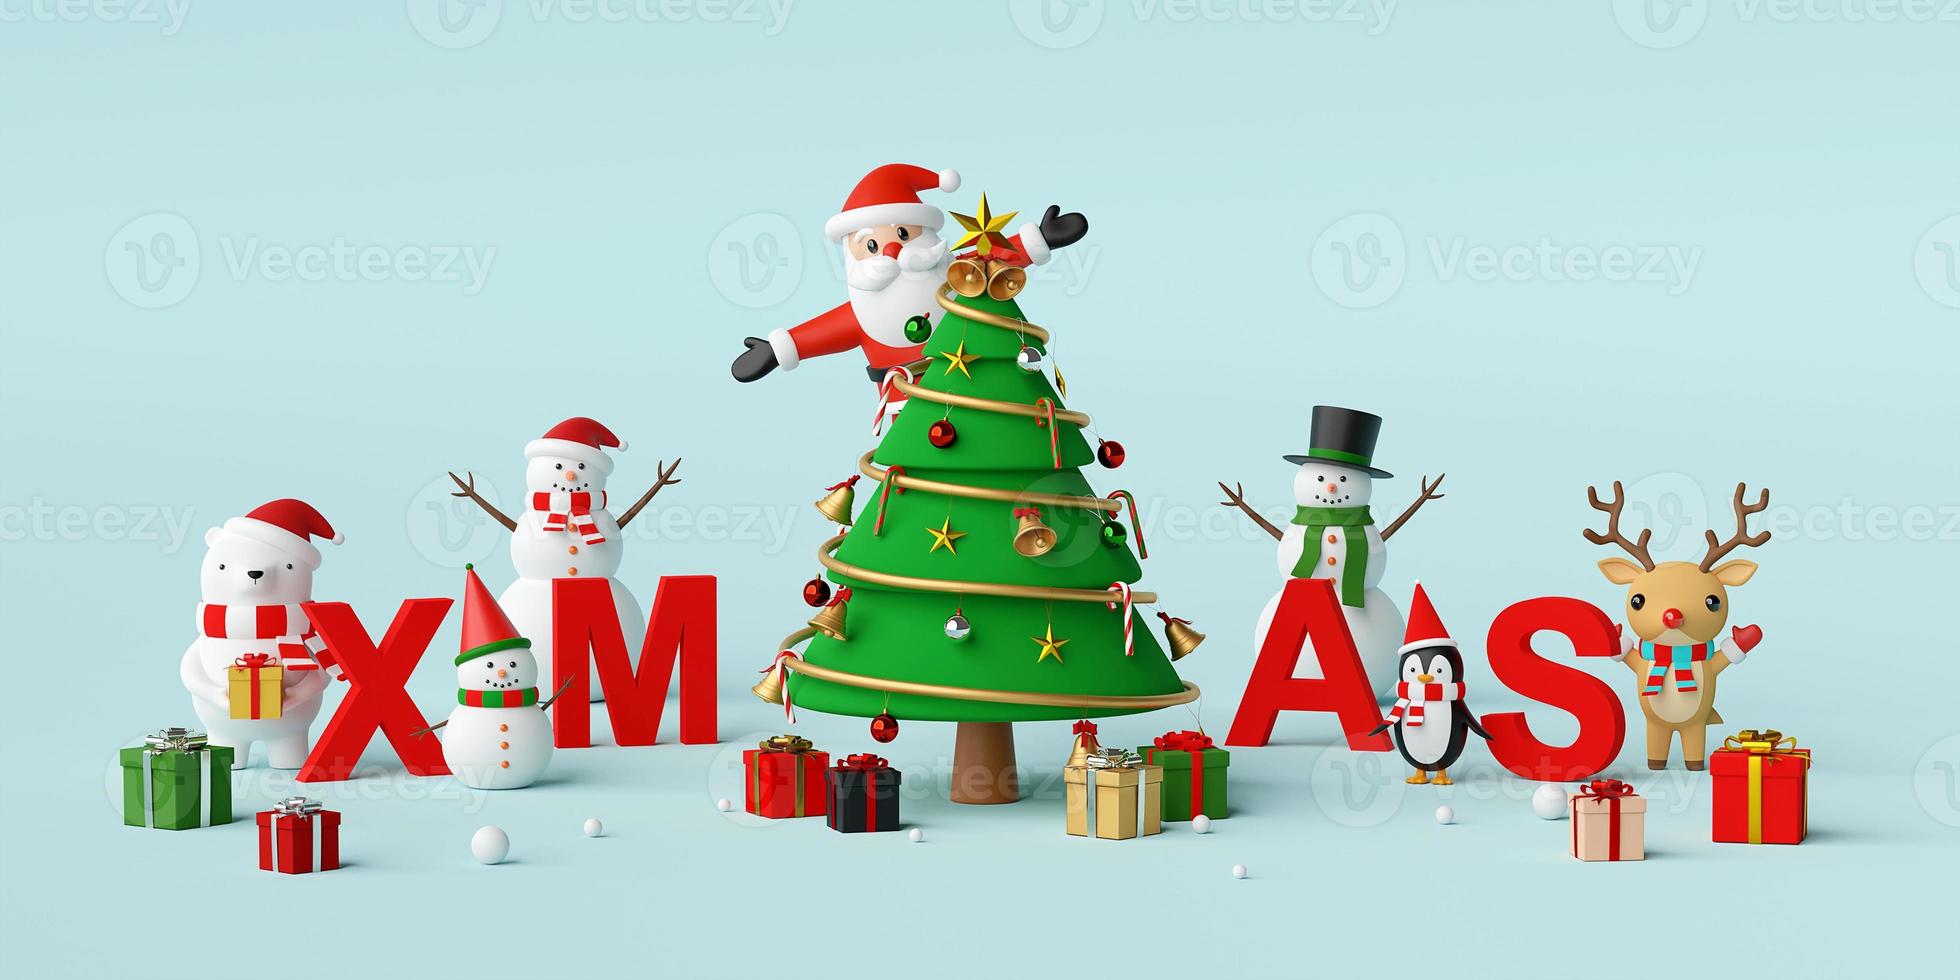 god jul och gott nytt år, jultomten och julkaraktär med bokstäver xmas, 3d -rendering foto